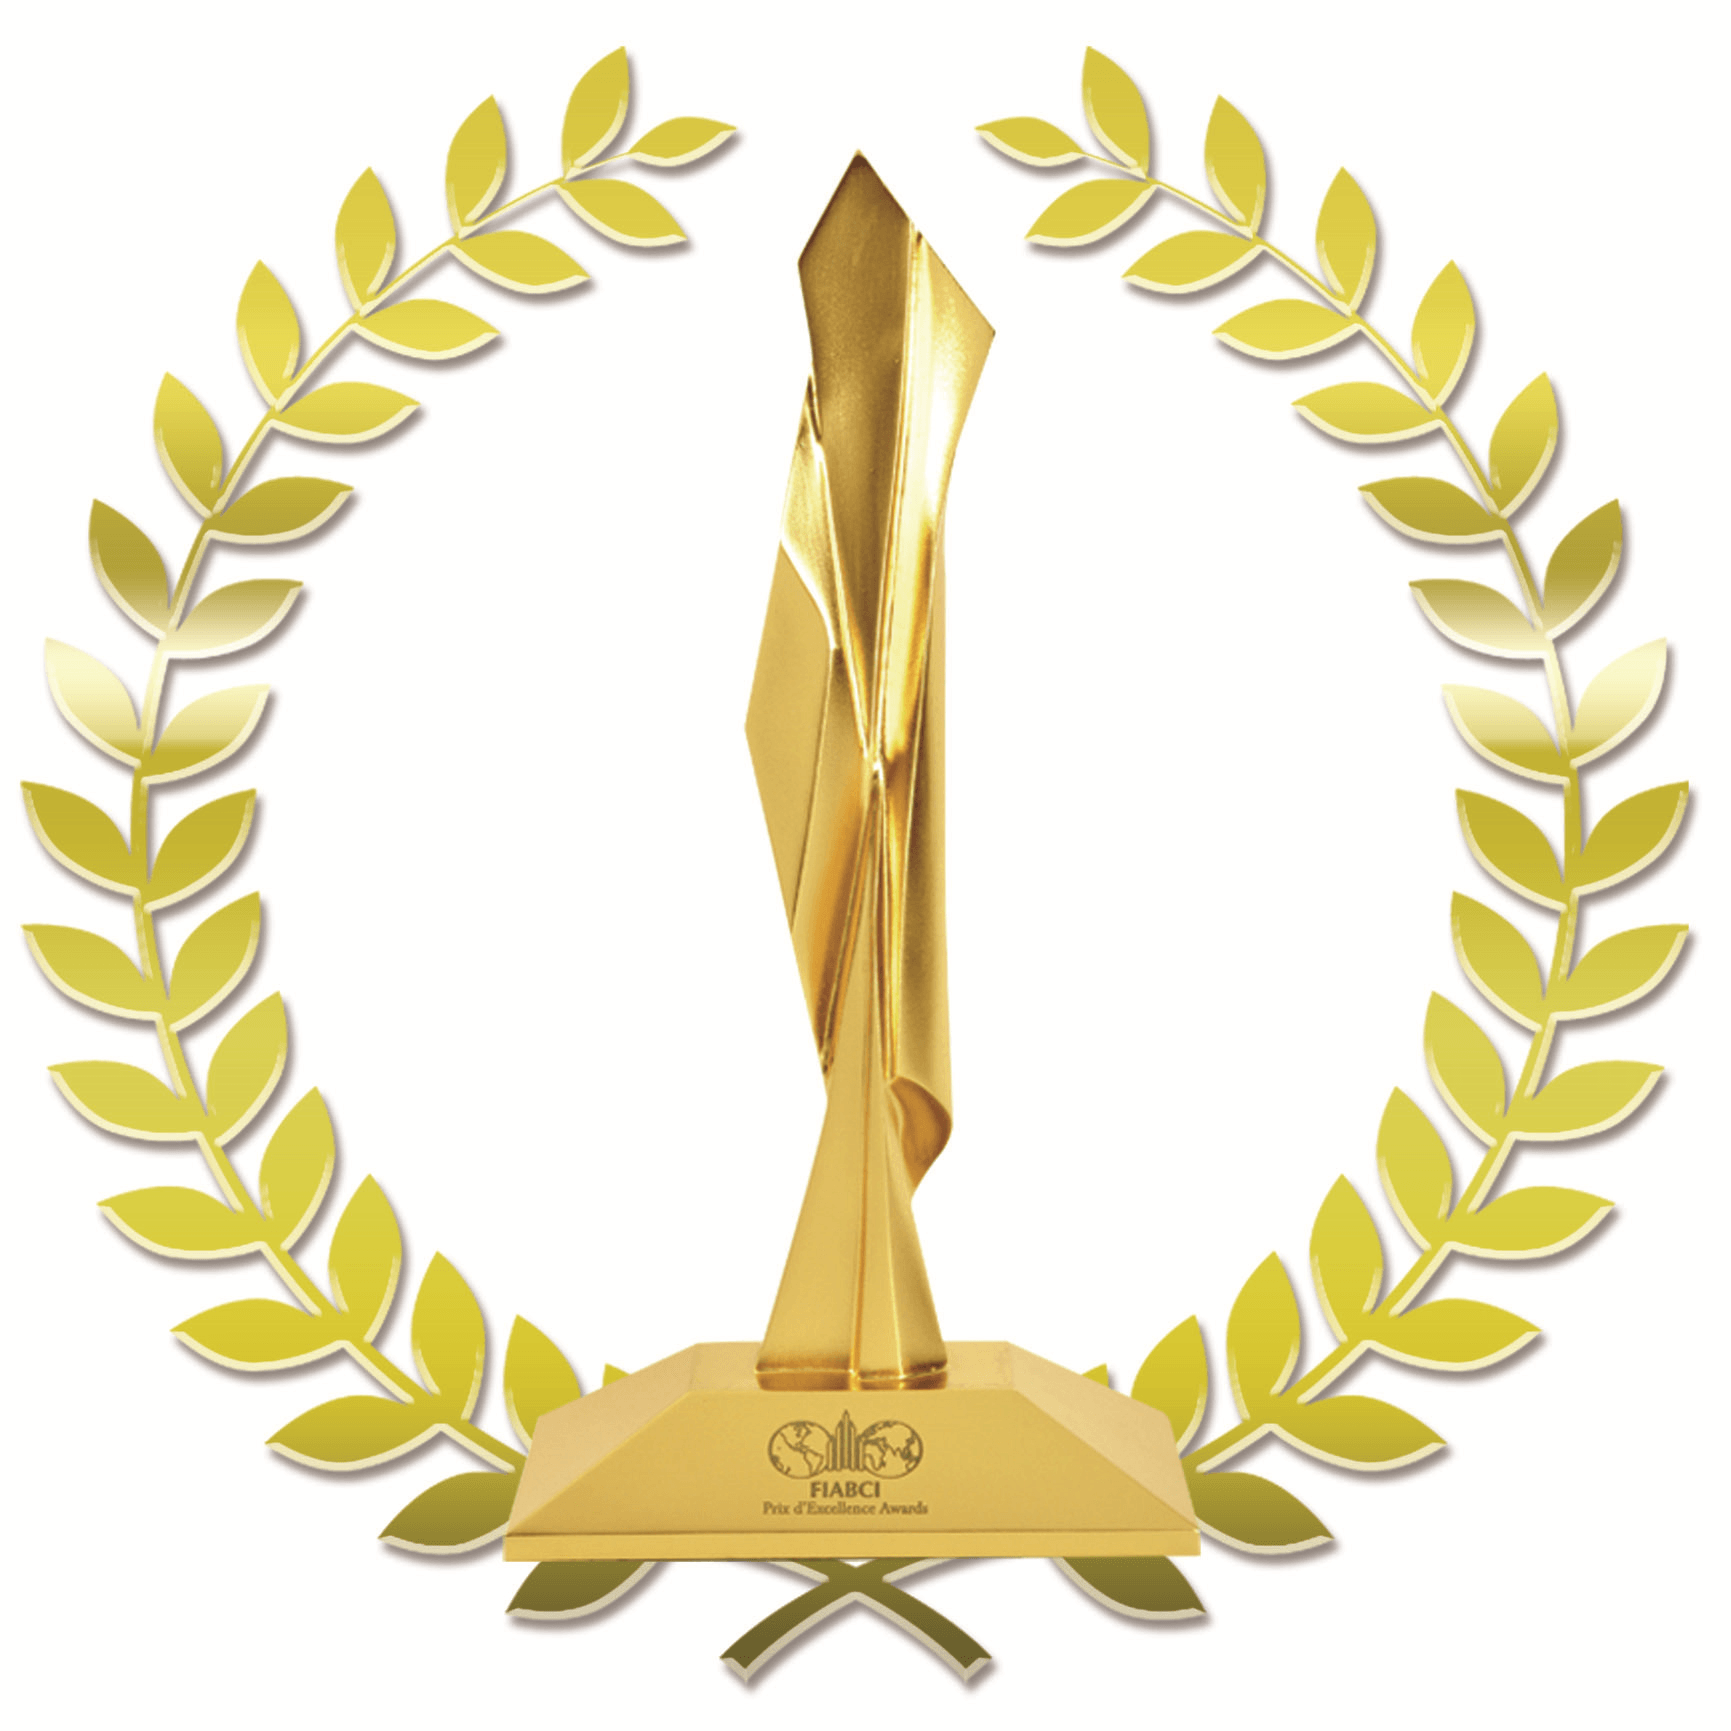 Award Logo - Award Logos